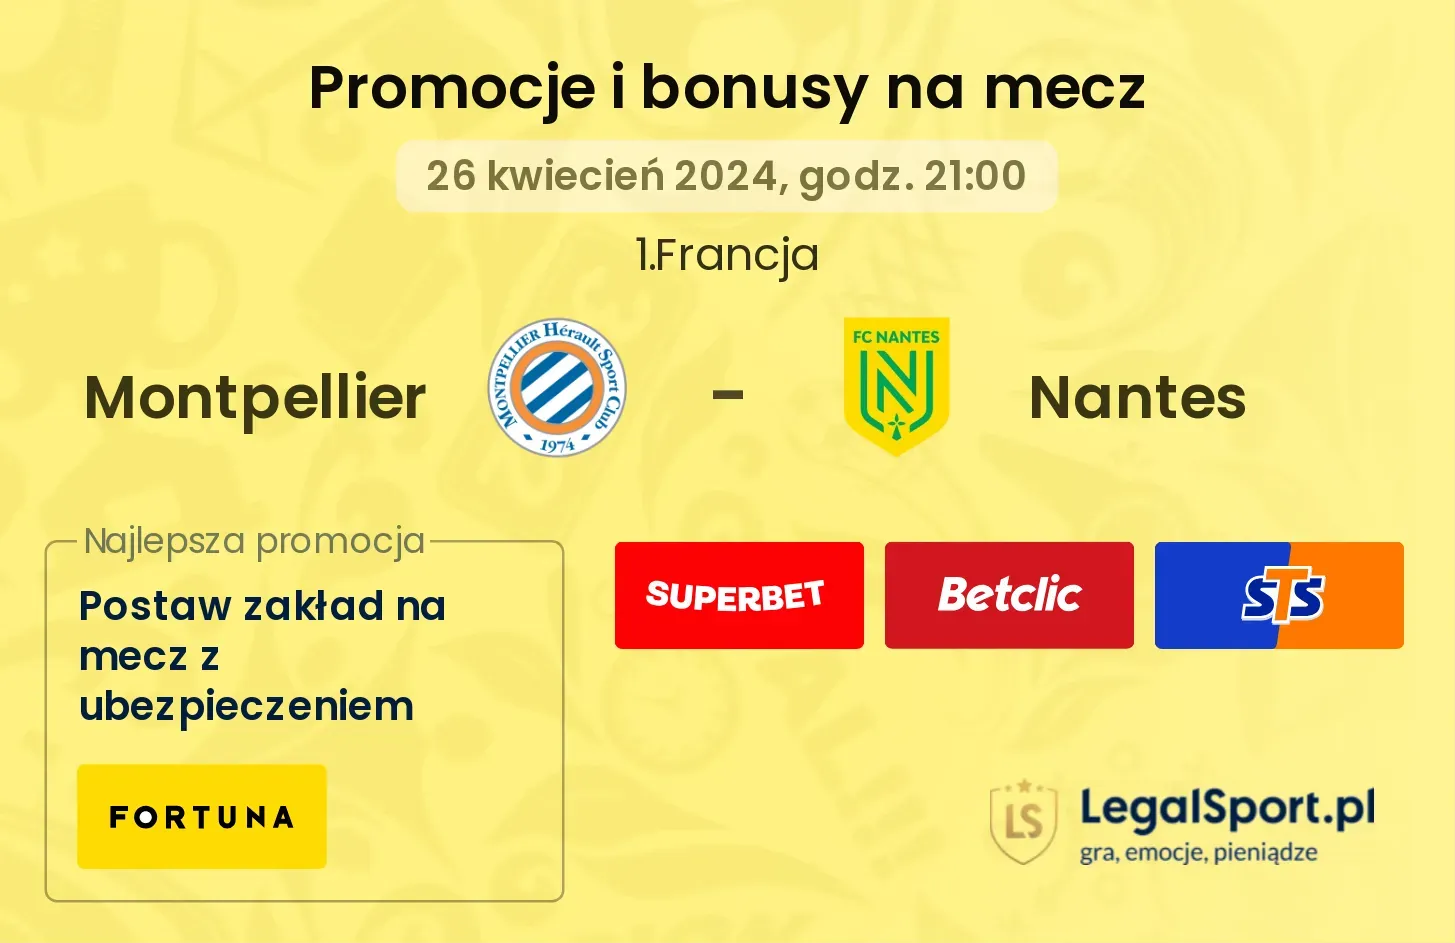 Montpellier - Nantes promocje bonusy na mecz